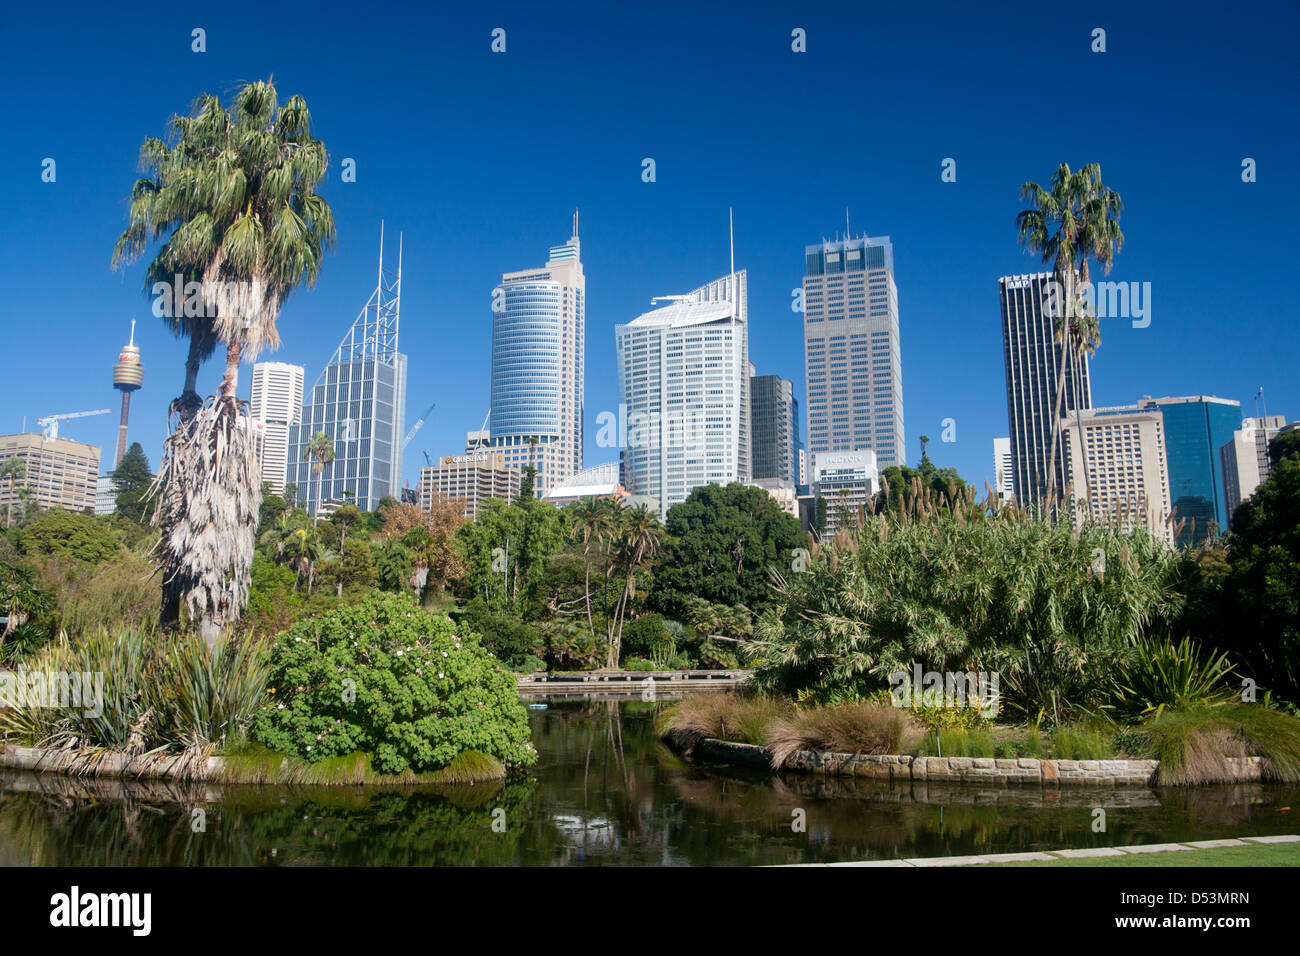 Royal Botanic Gardens avec CBD skyline derrière Sydney New South Wales (NSW) Australie Banque D'Images